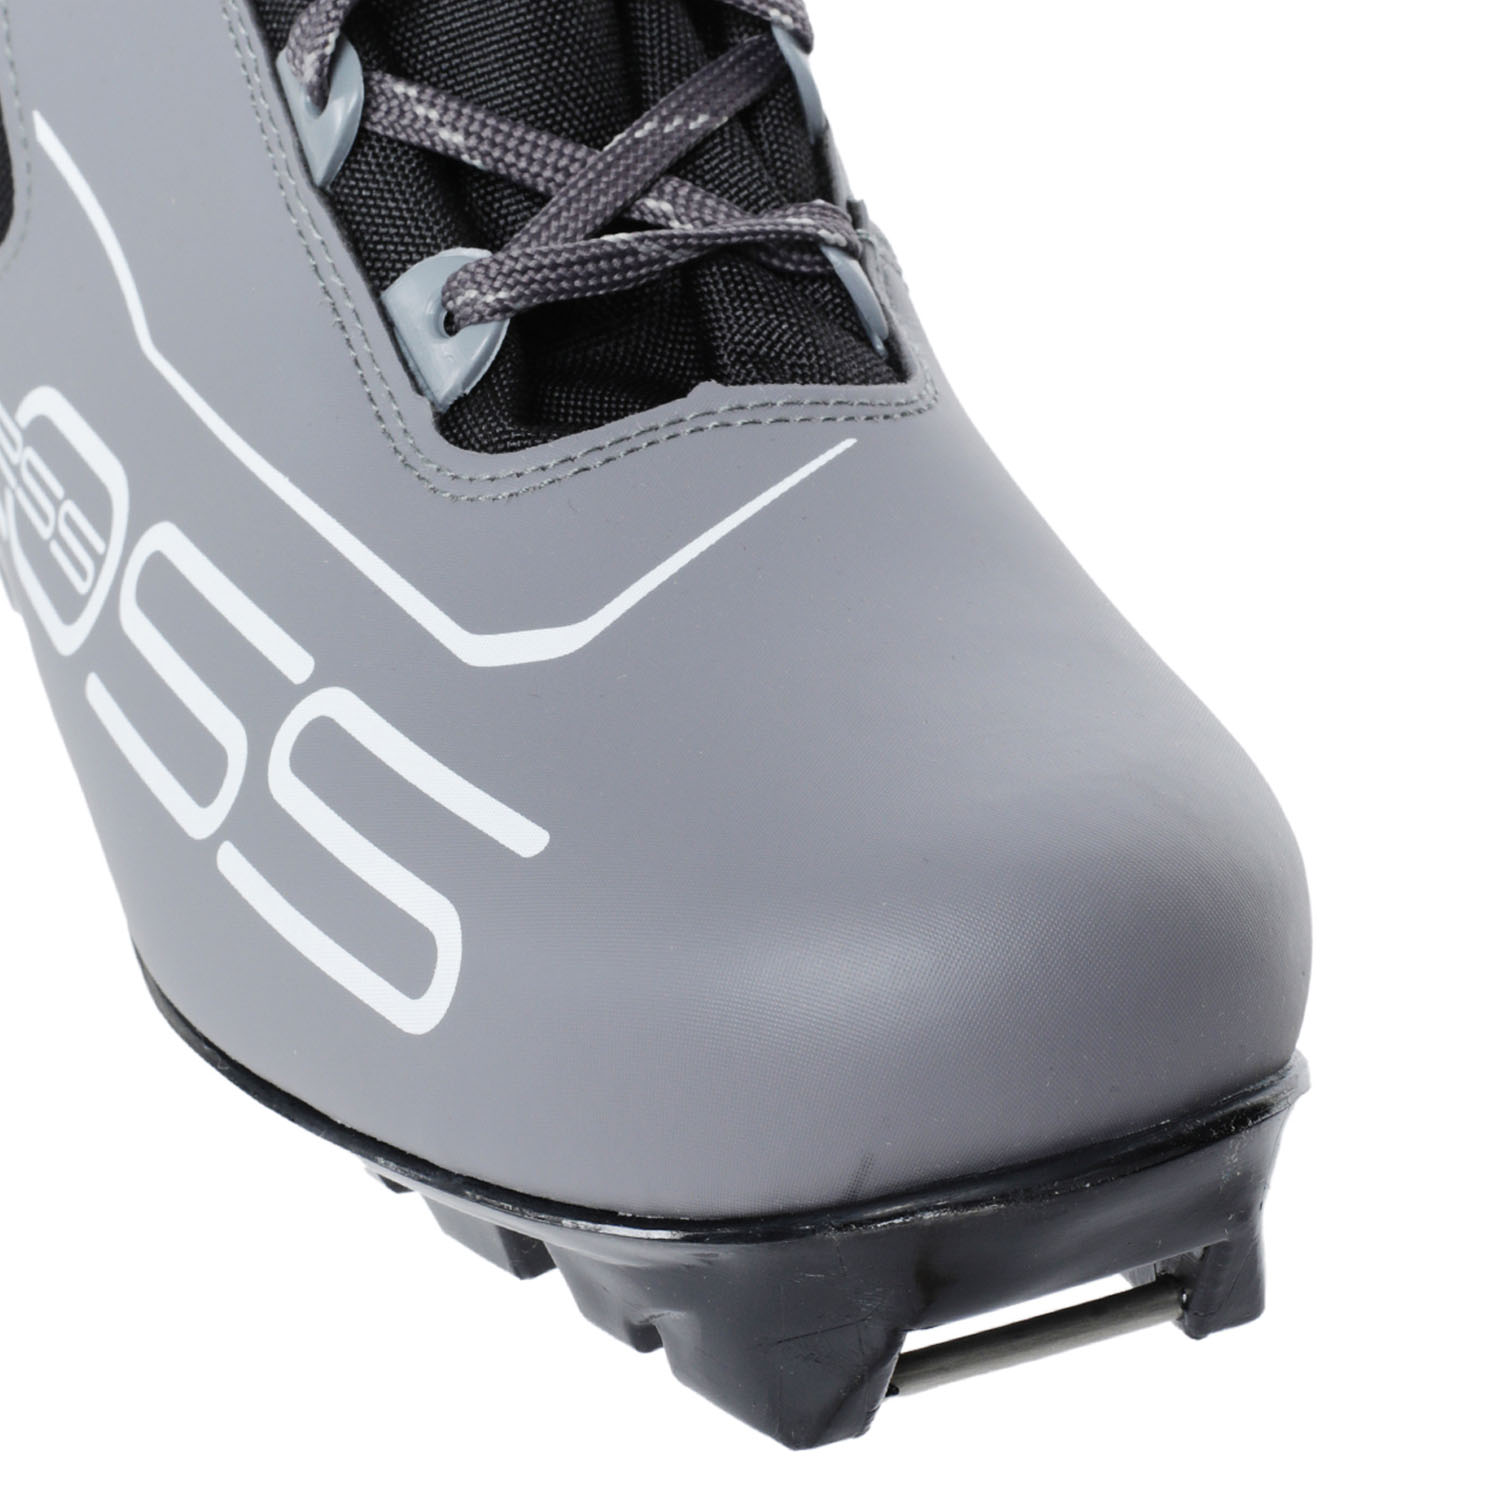 Лыжные ботинки LOSS Loss 243 Серый